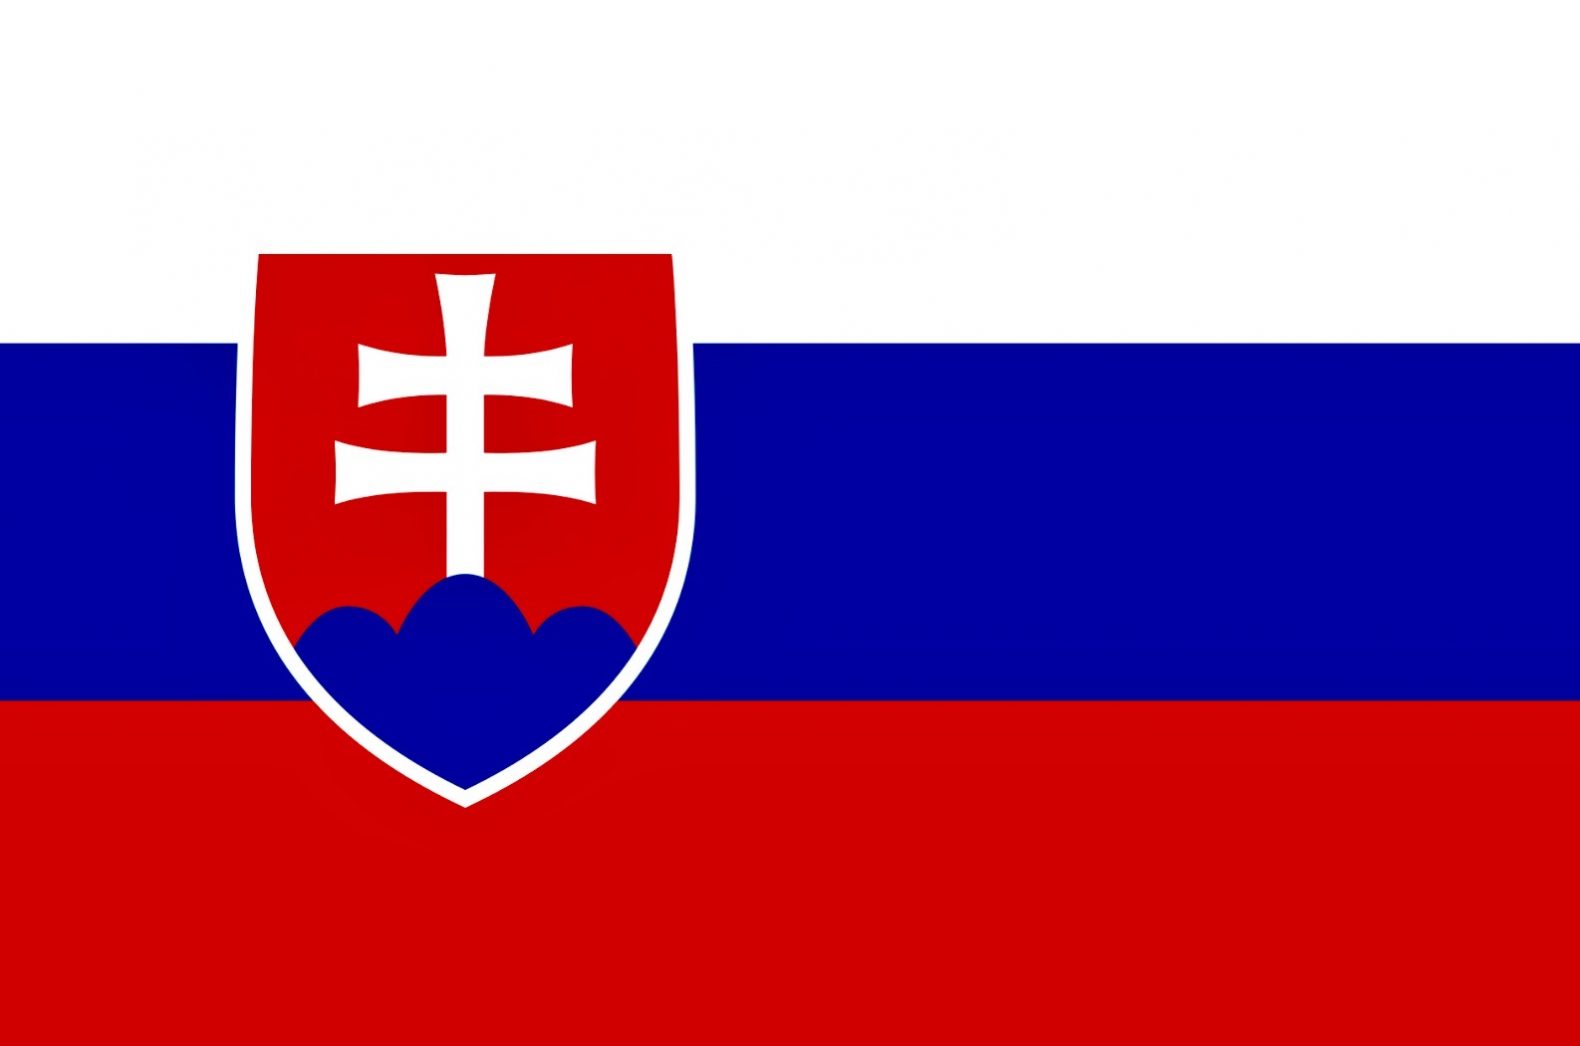 Le drapeau de la Slovaquie